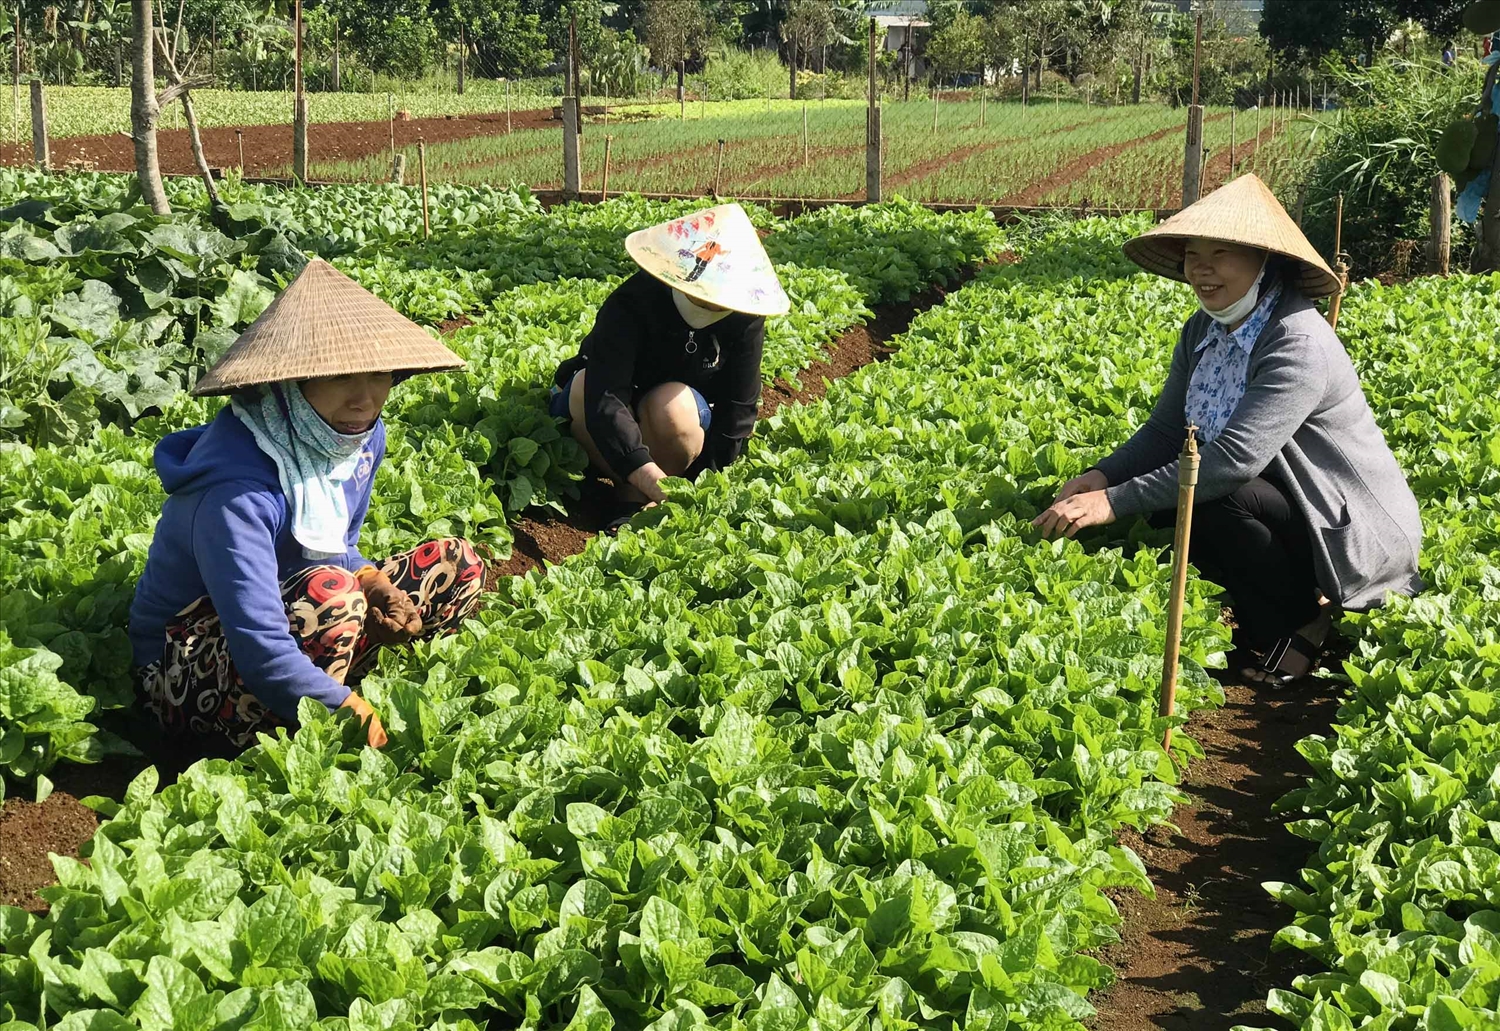 Mô hình trồng rau an toàn theo tiêu chuẩn VietGap được triển khai hiệu quả tại Gia Lai.